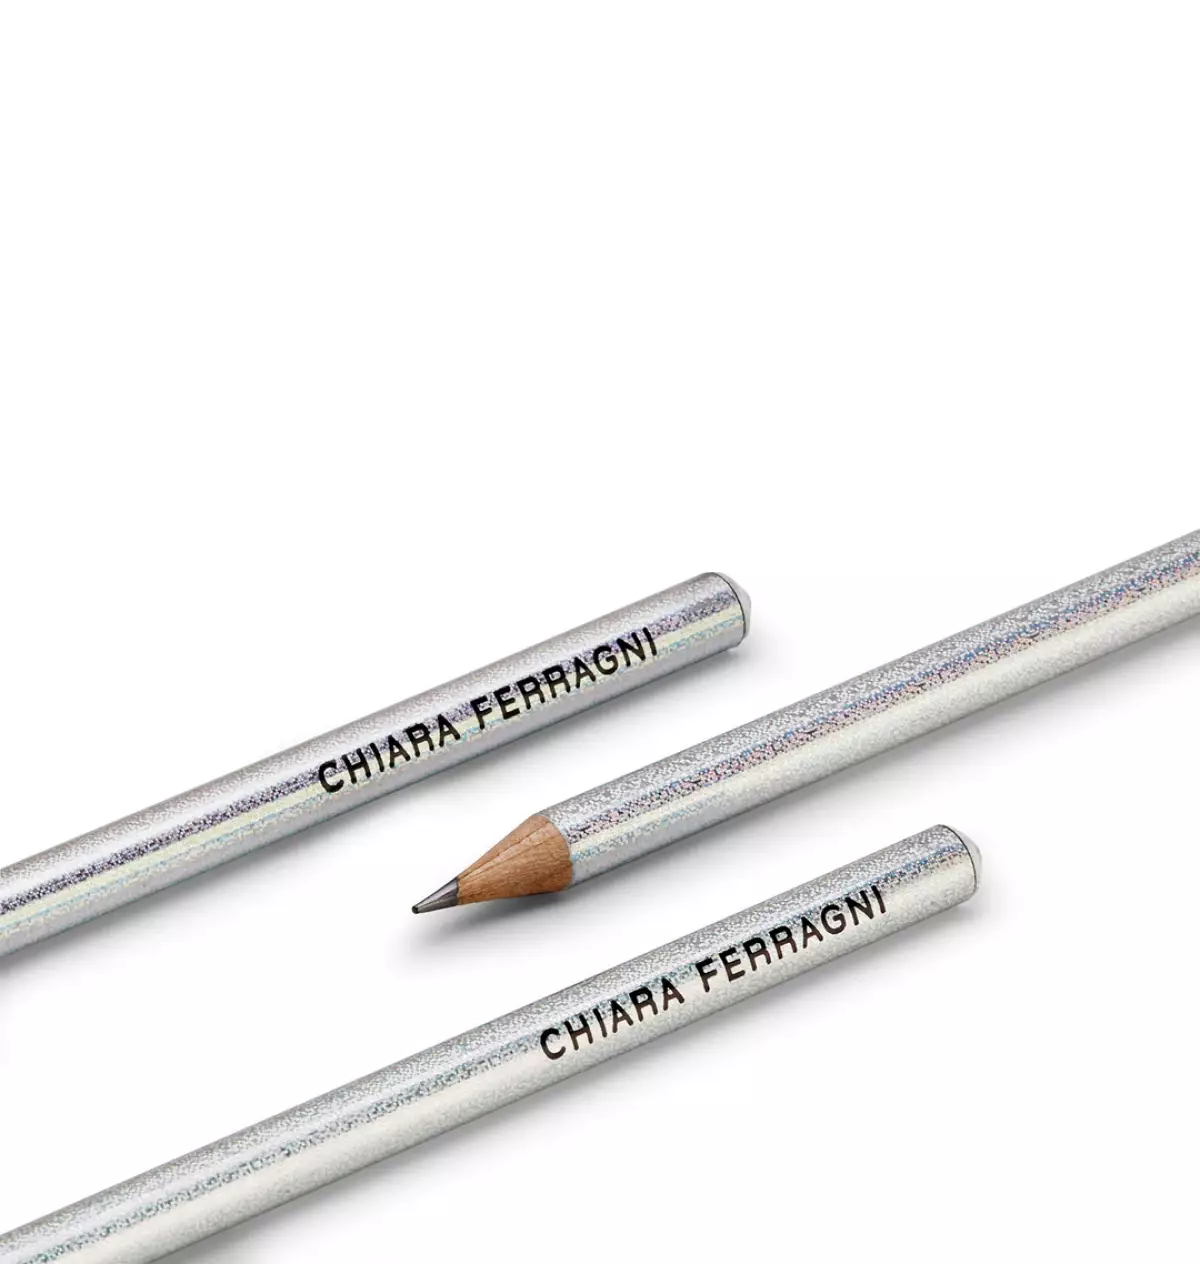 Creioane Chiara Ferragni cu strasuri 3 bucati in set 0.7x18cm